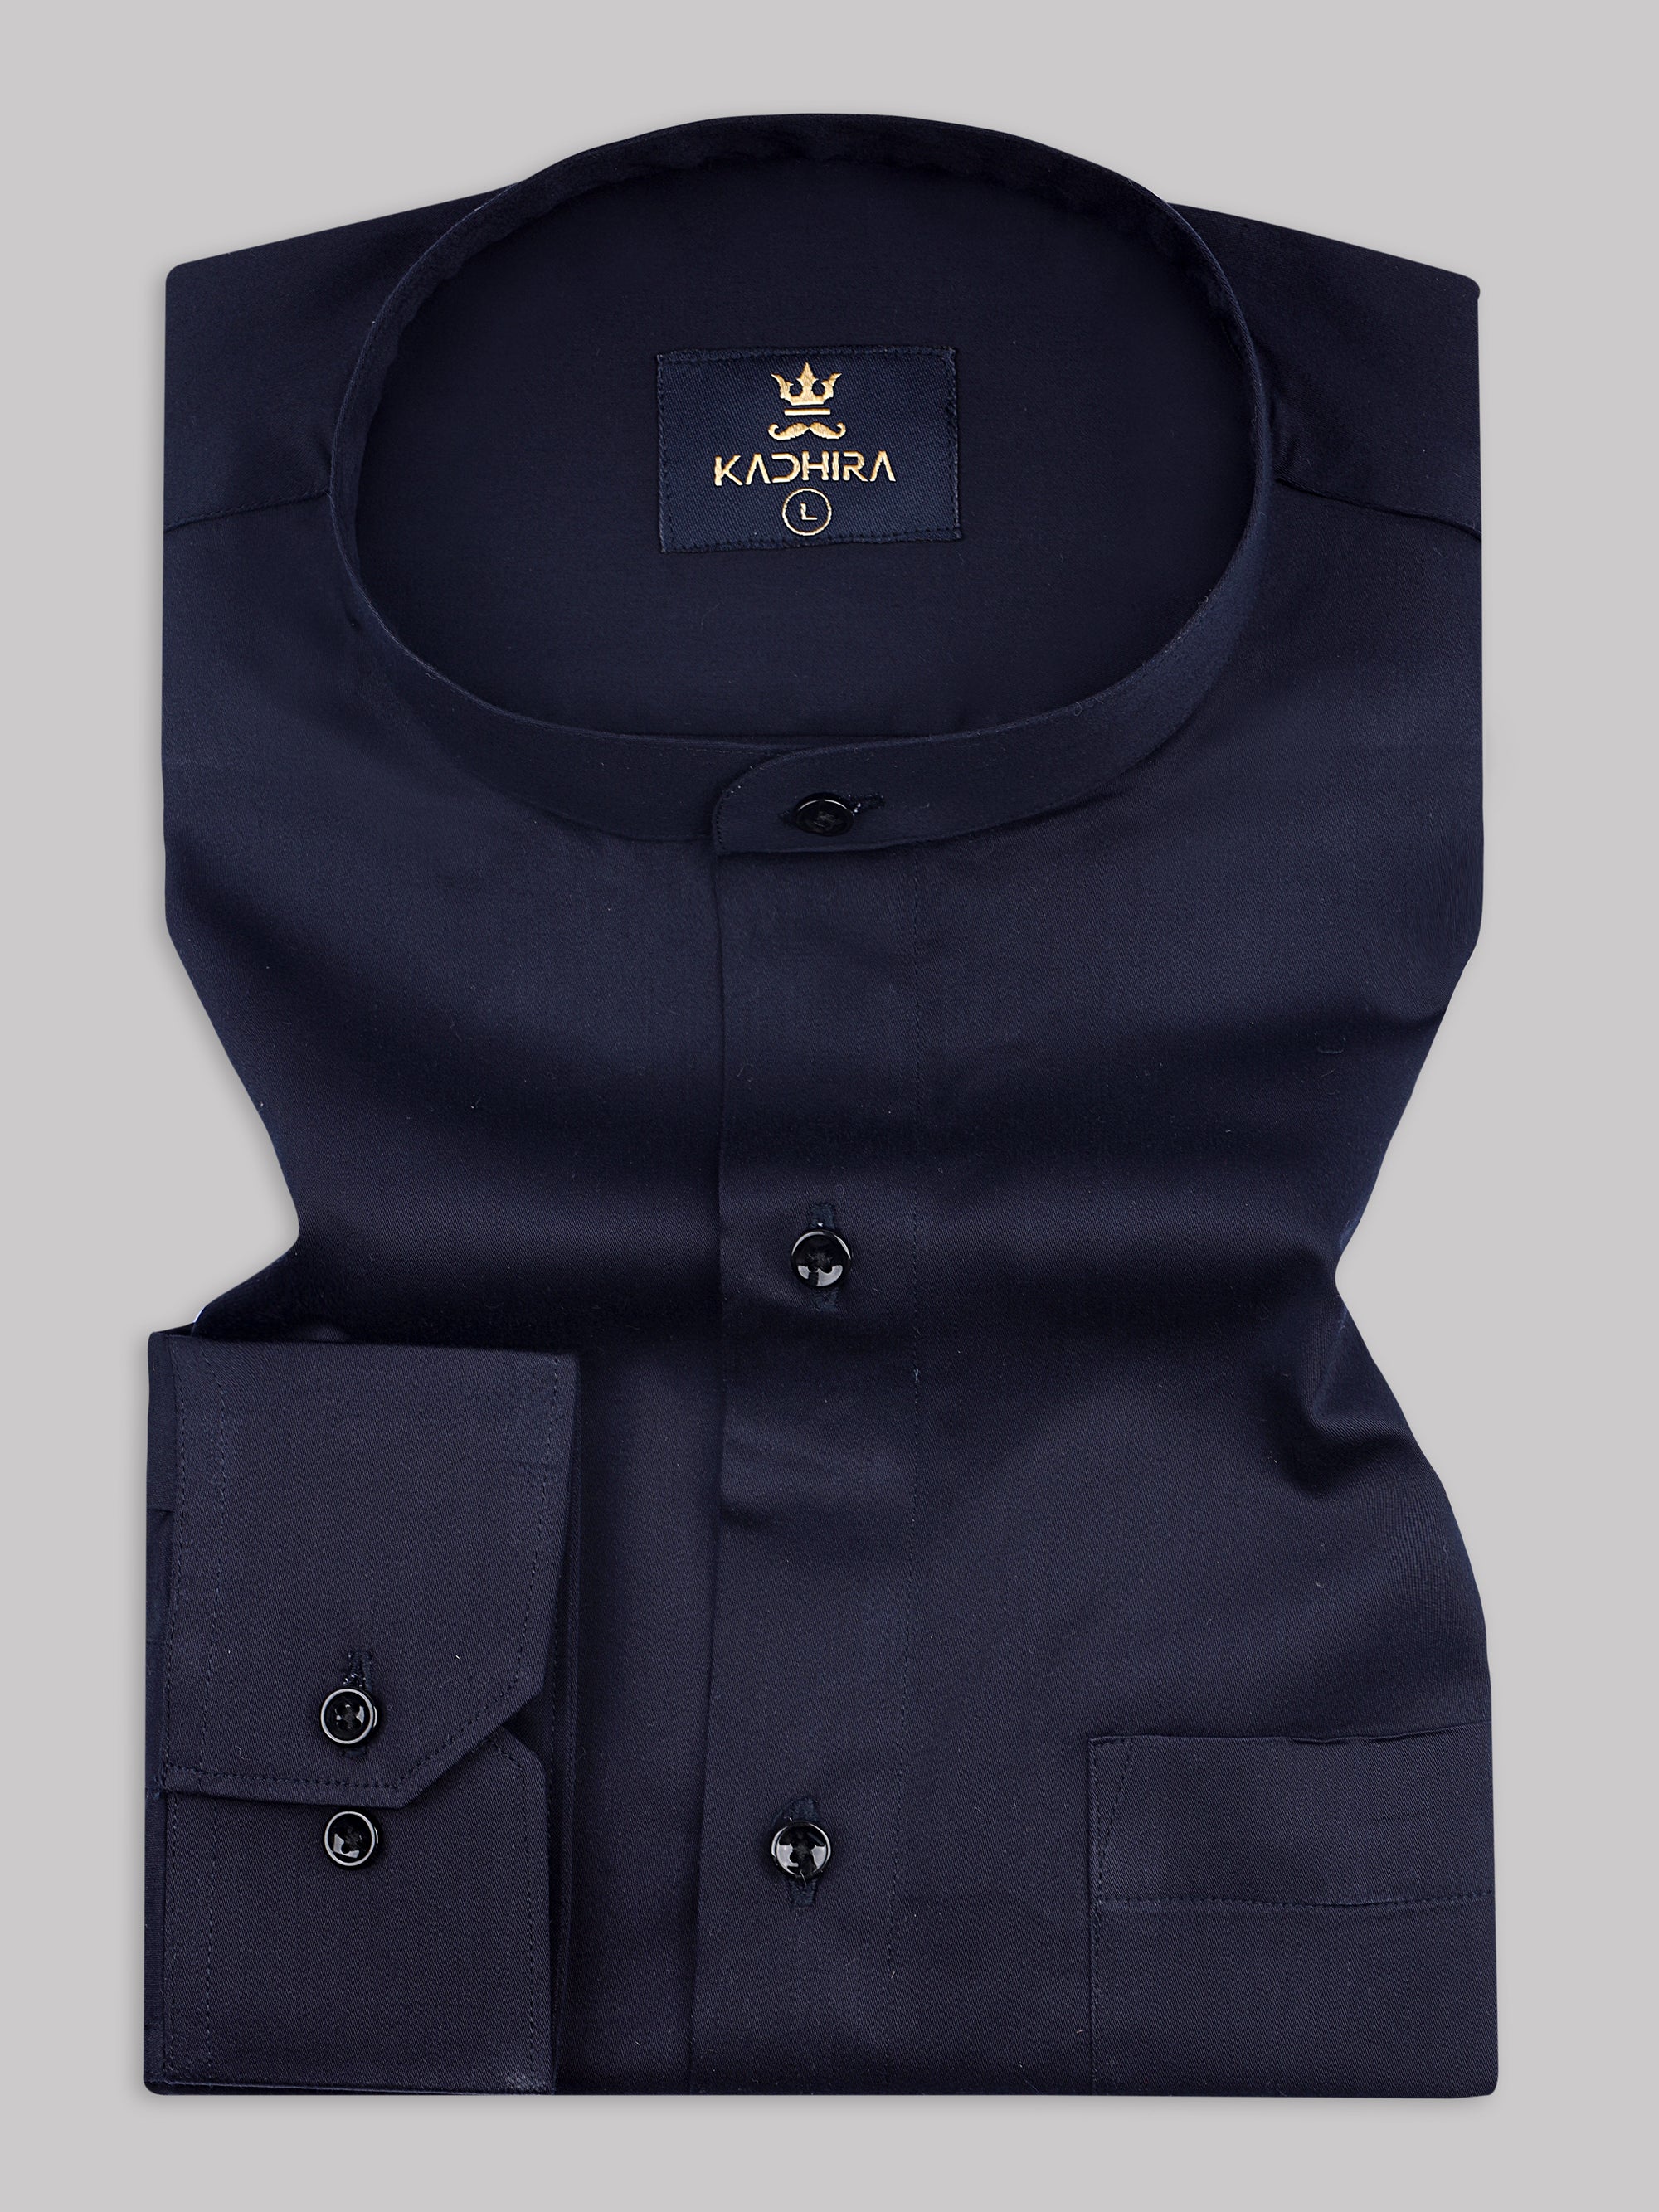 Navy Blue Subtle Sheen Super Soft Premium Cotton Shirt